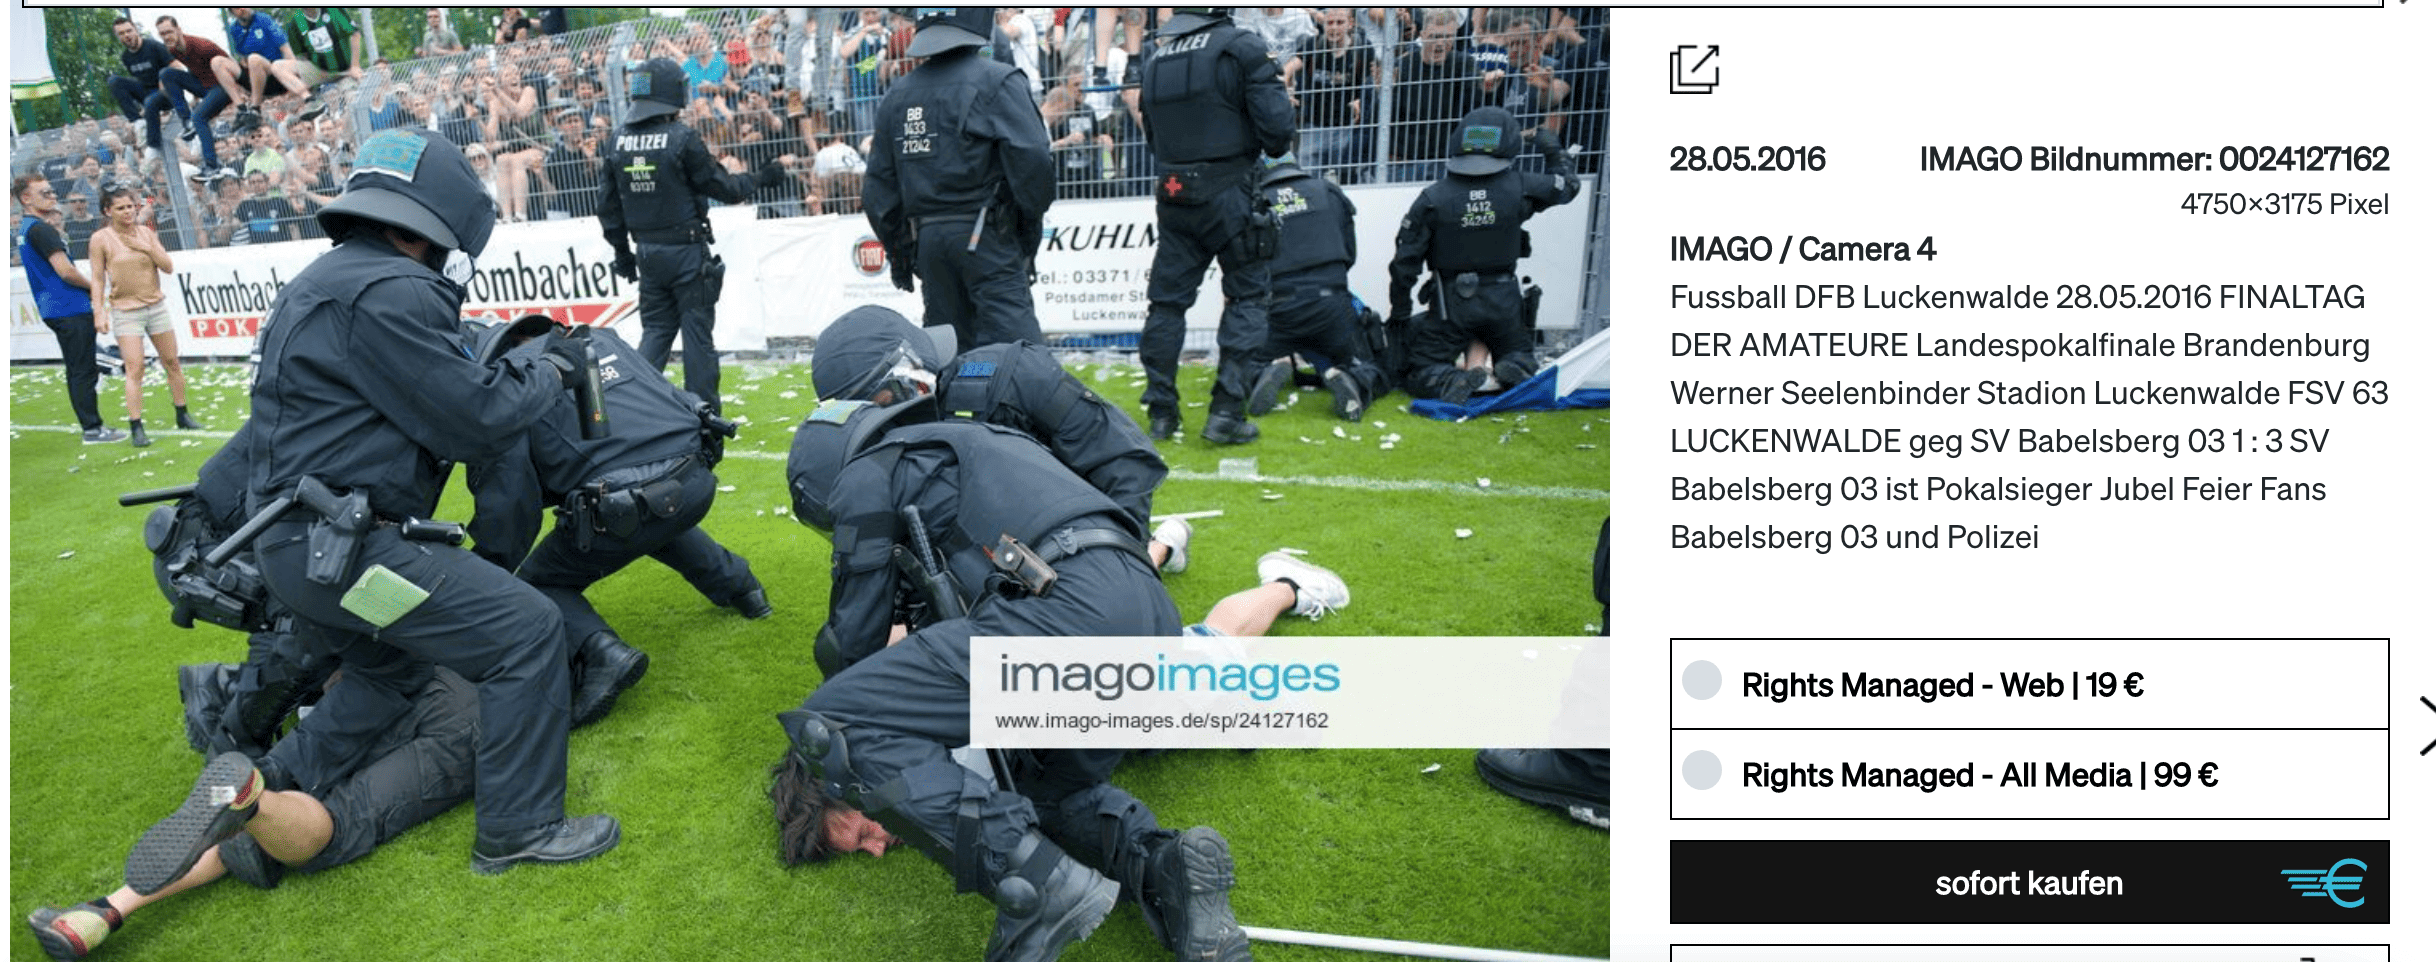 Polizisten stellen Fußballfans aus Babelsberg